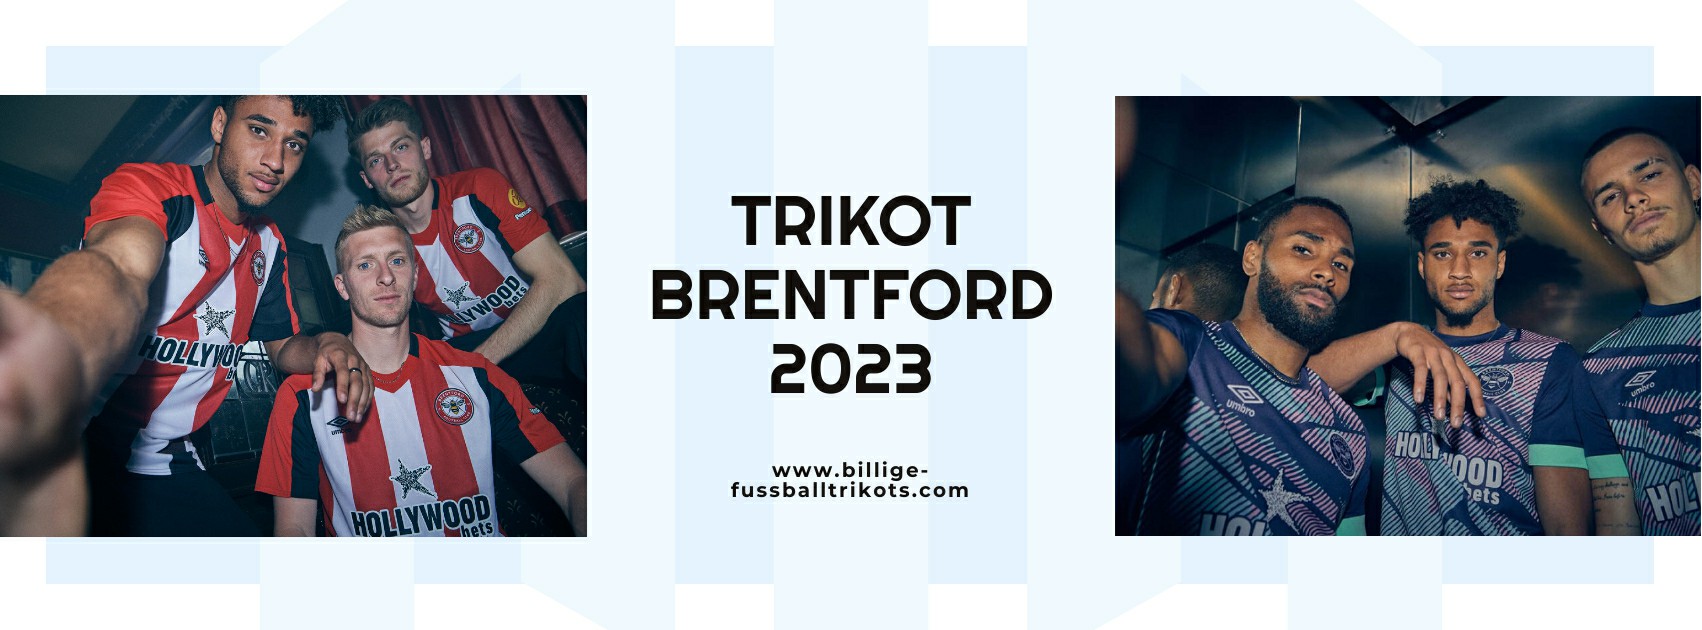 Brentford Trikot 2023-2024